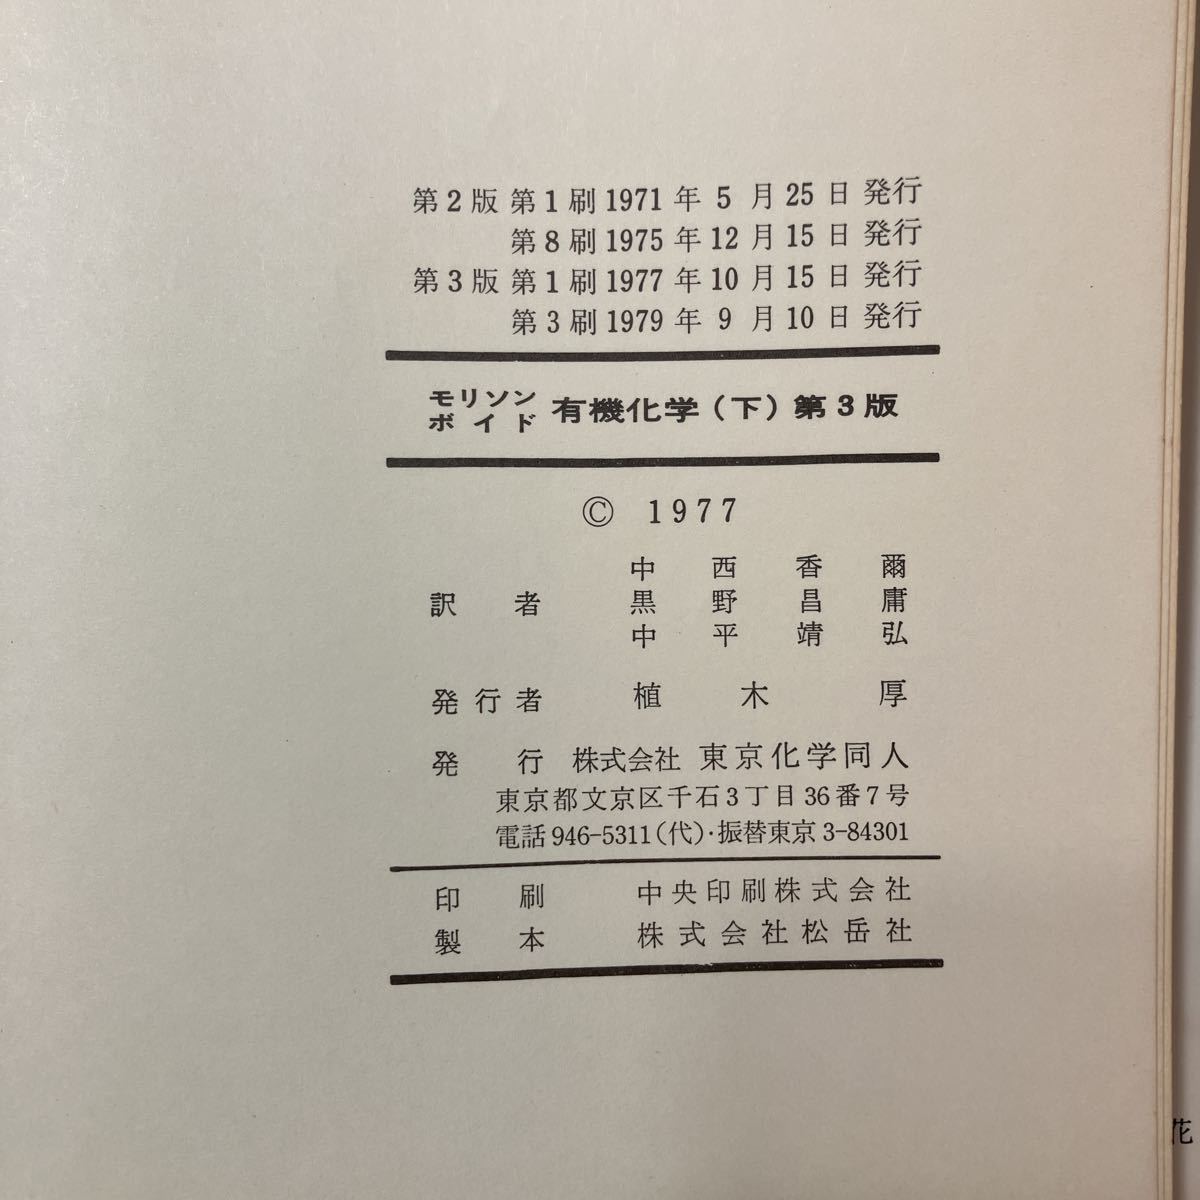 zaa-451♪モリソン, ボイド　有機化学 (下) モリソン (著), ボイド (著), 中西 香爾 (翻訳)　 東京化学同人; 第4版 (1979/9/10)